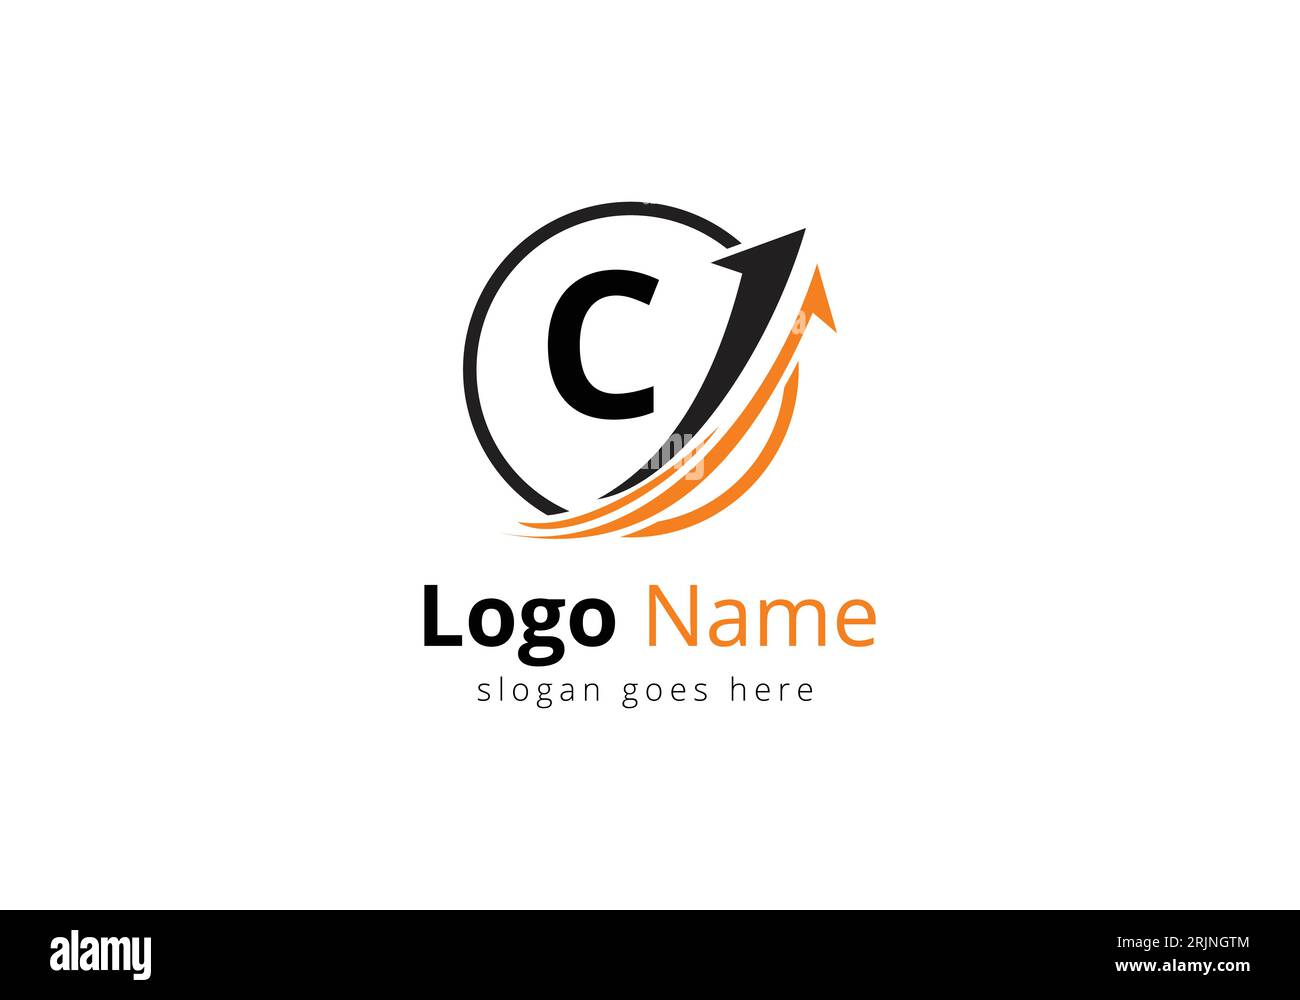 Logo de financement avec concept lettre C. Concept de logo financier ou de réussite. Logo pour l'entreprise comptable et l'identité de l'entreprise Illustration de Vecteur